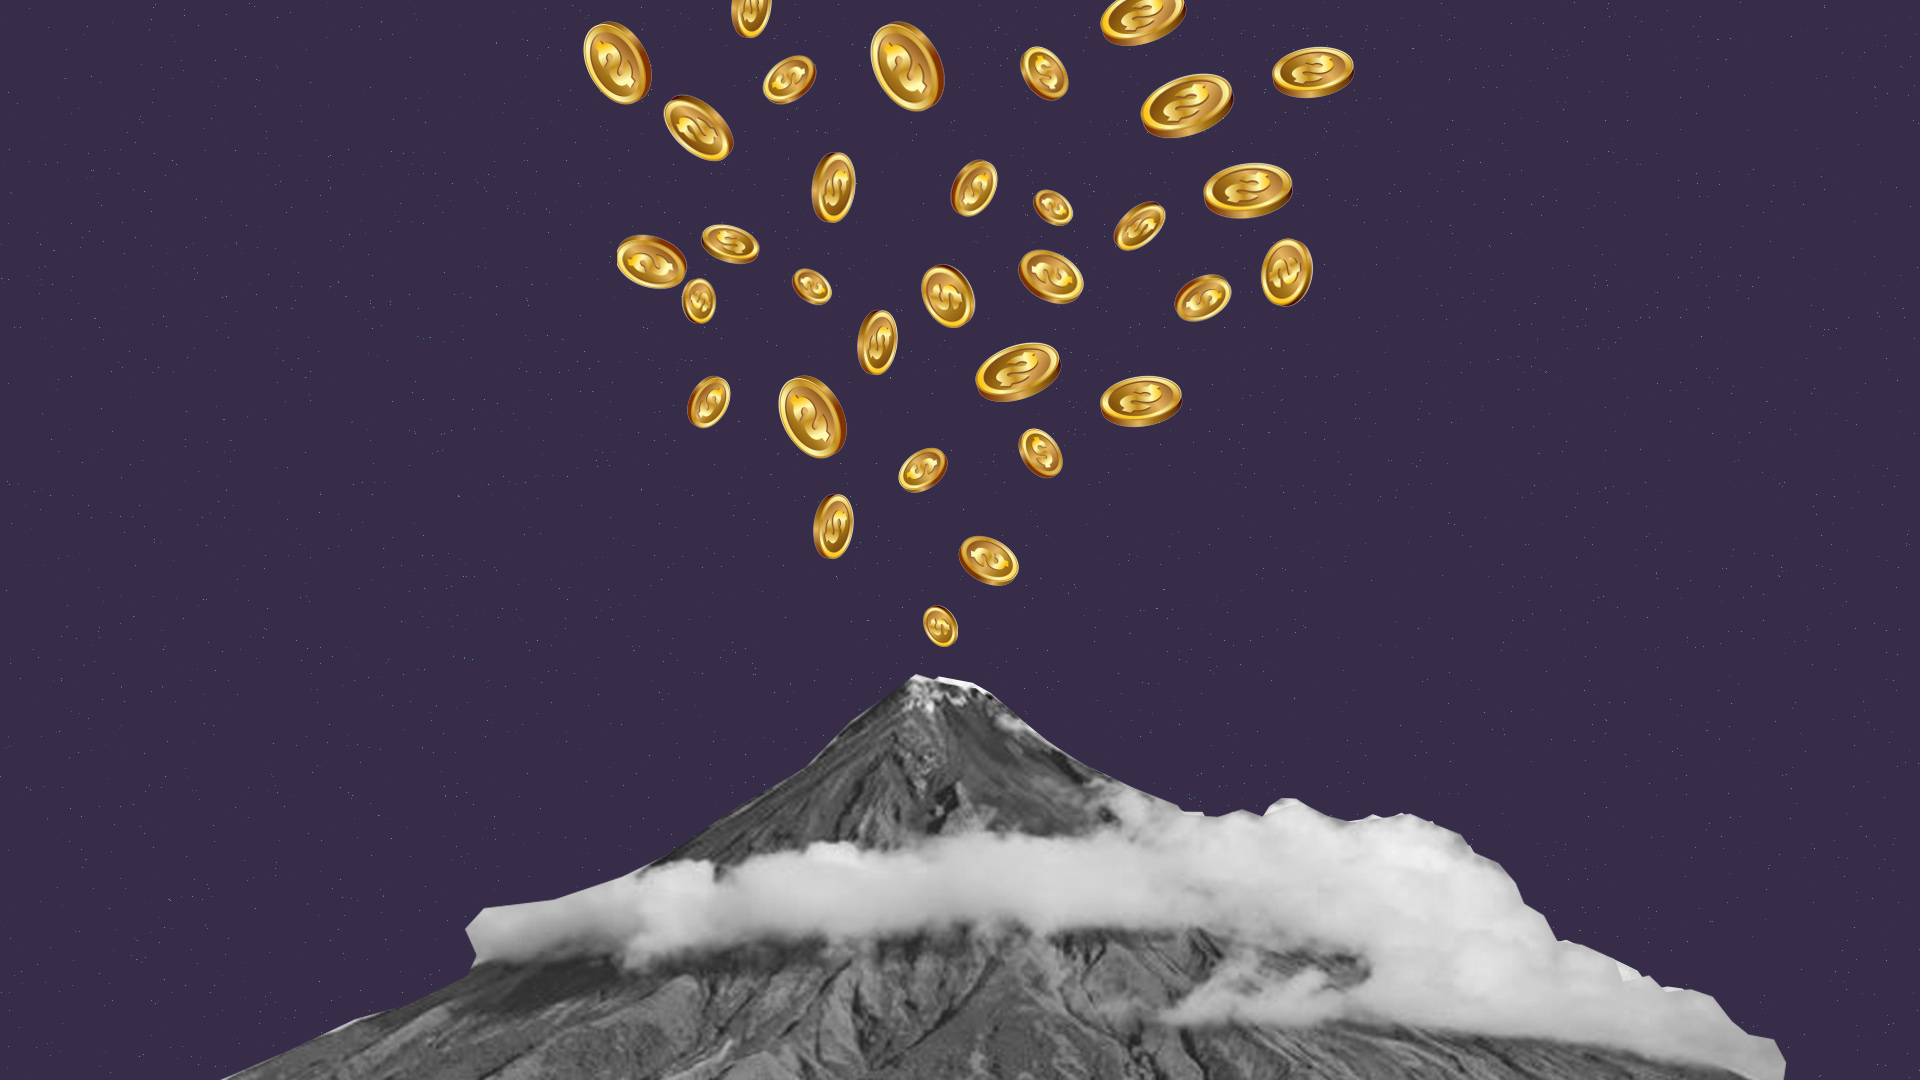 el salvador volcano bitcoin mining